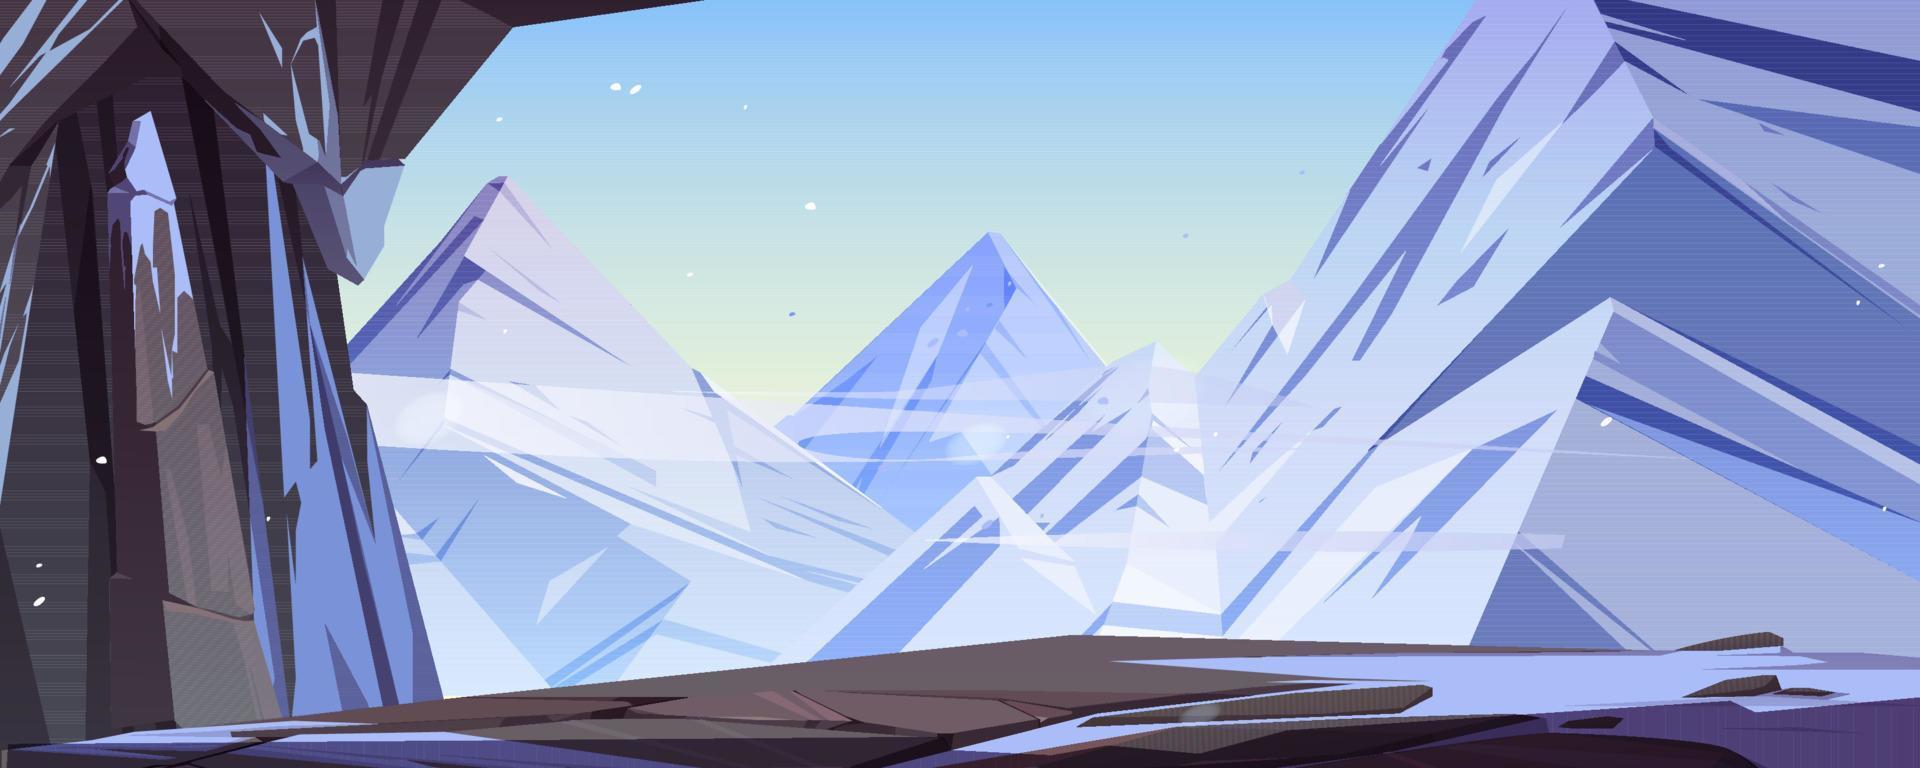 caverna de gelo no fundo dos desenhos animados de montanhas, caverna vetor